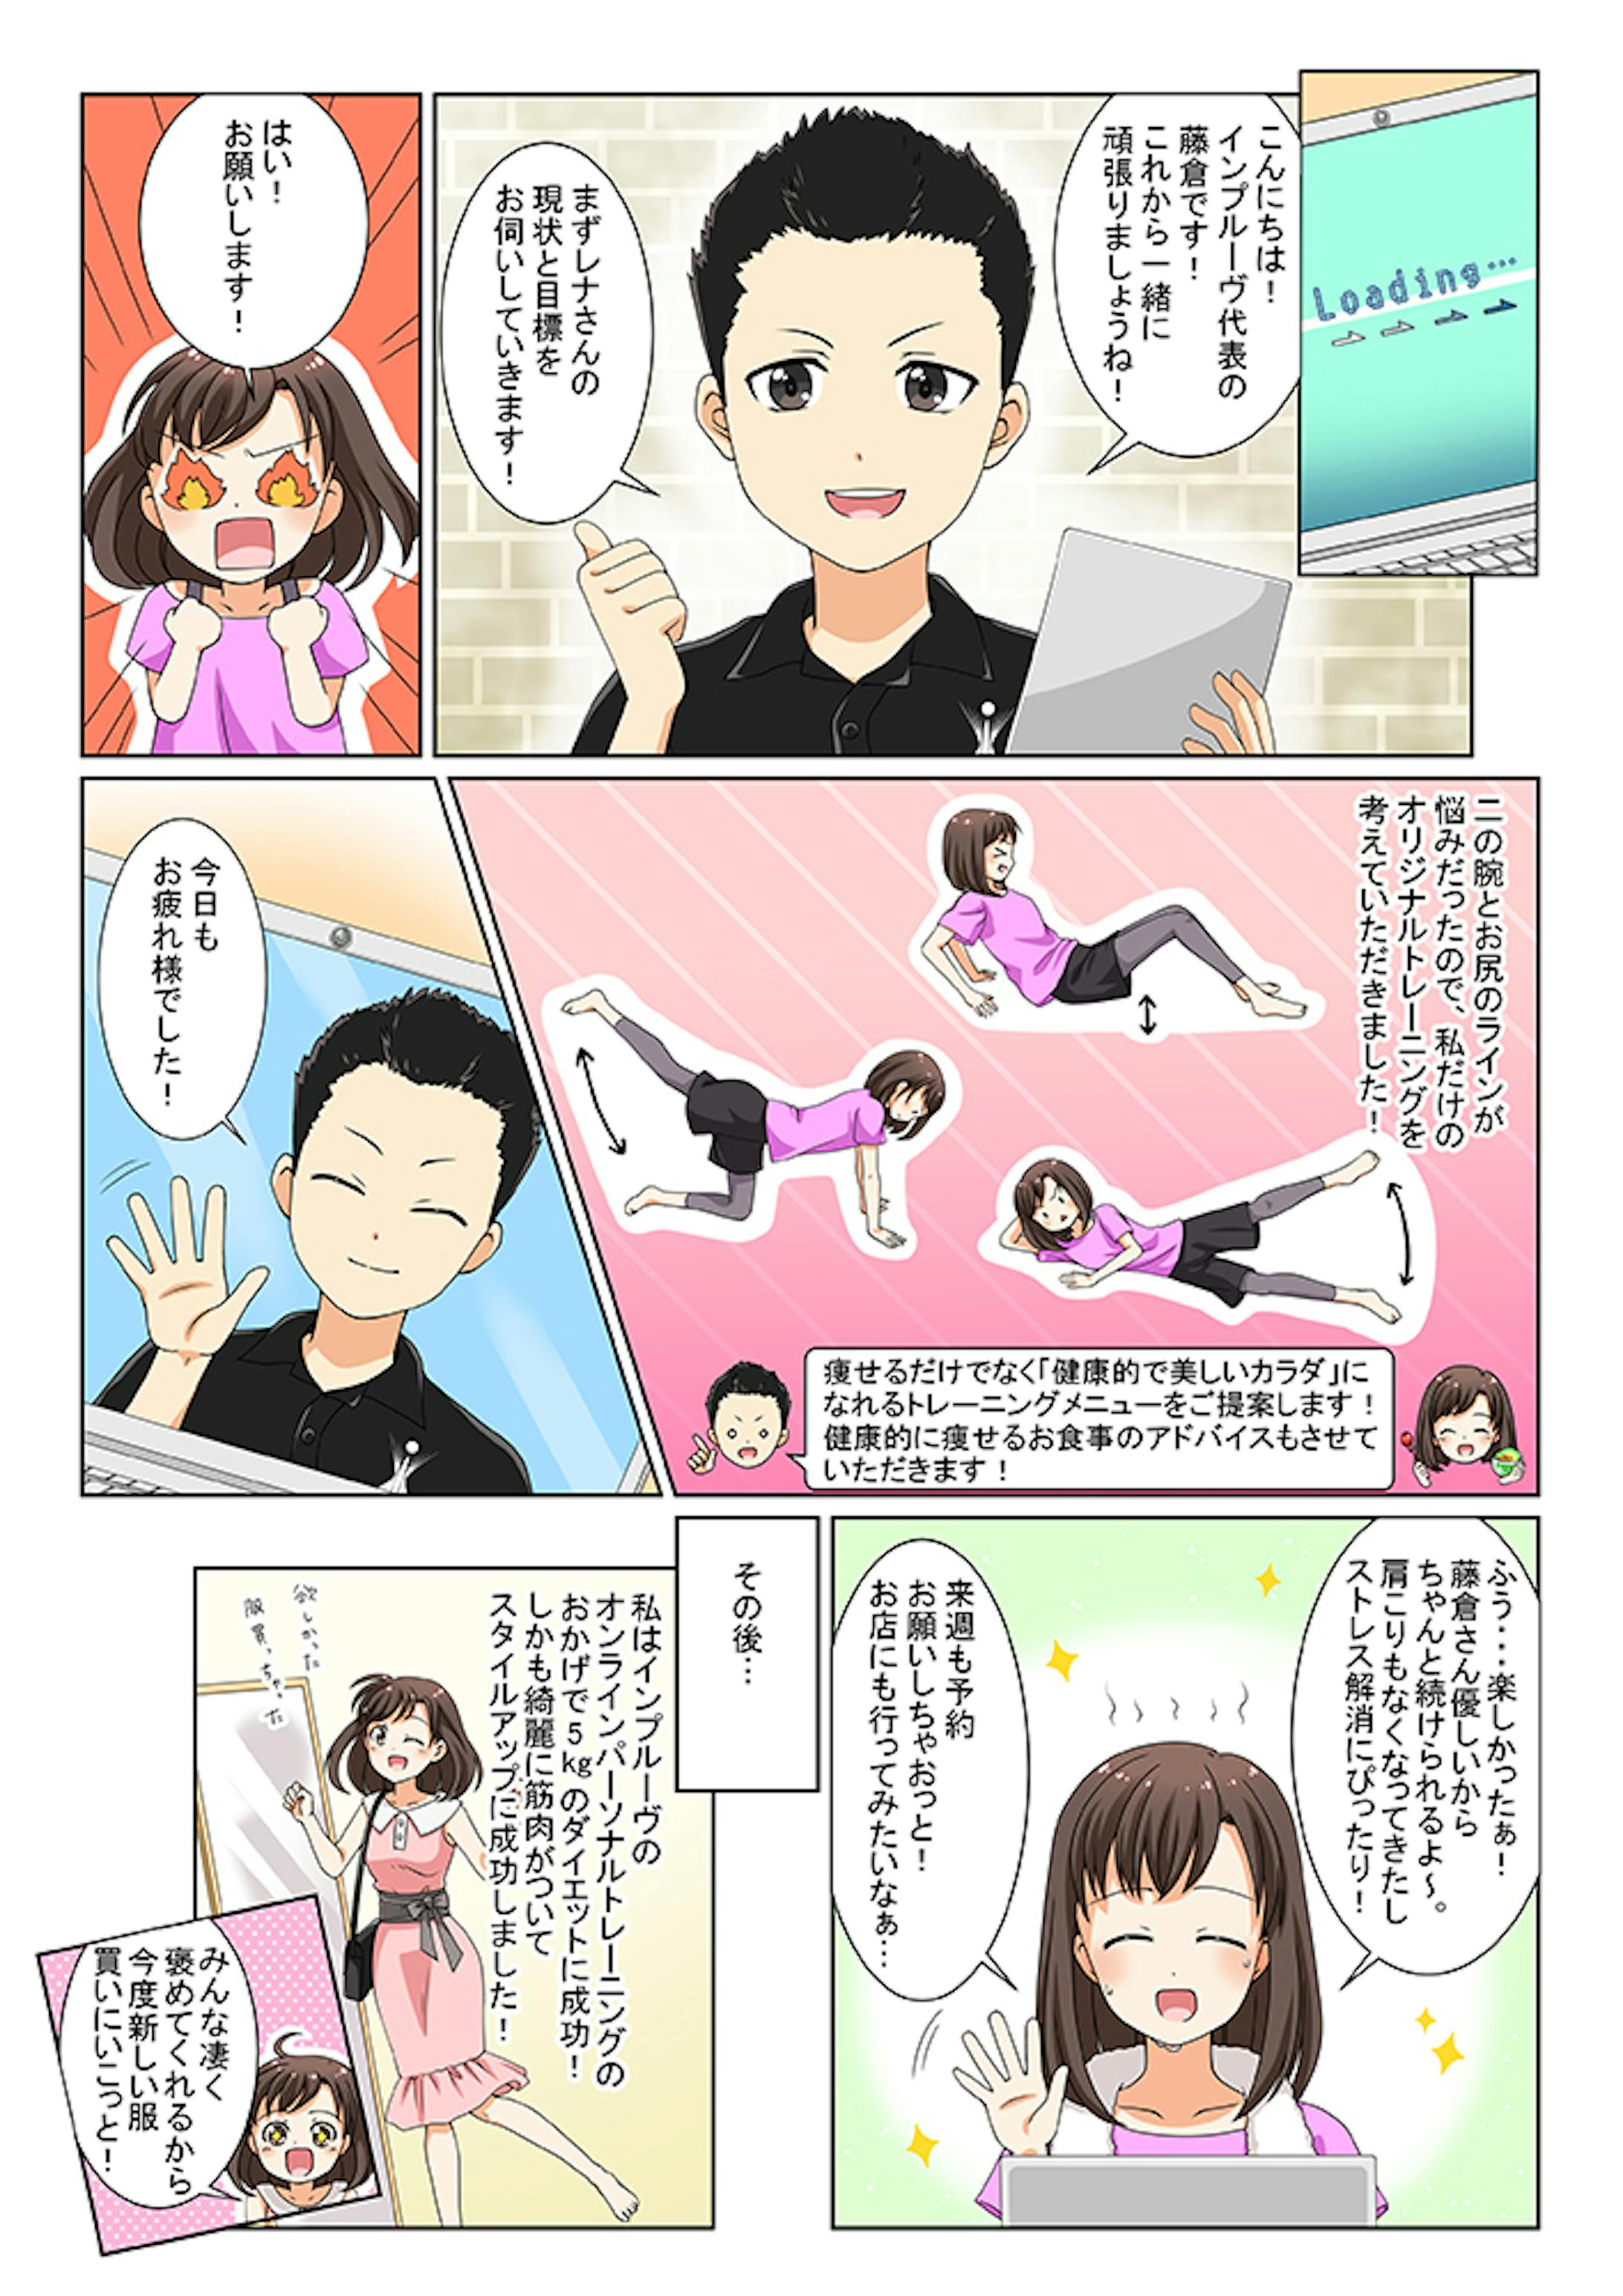 【仕事絵】オンラインパーソナルトレーニングのLP漫画とイラスト-4